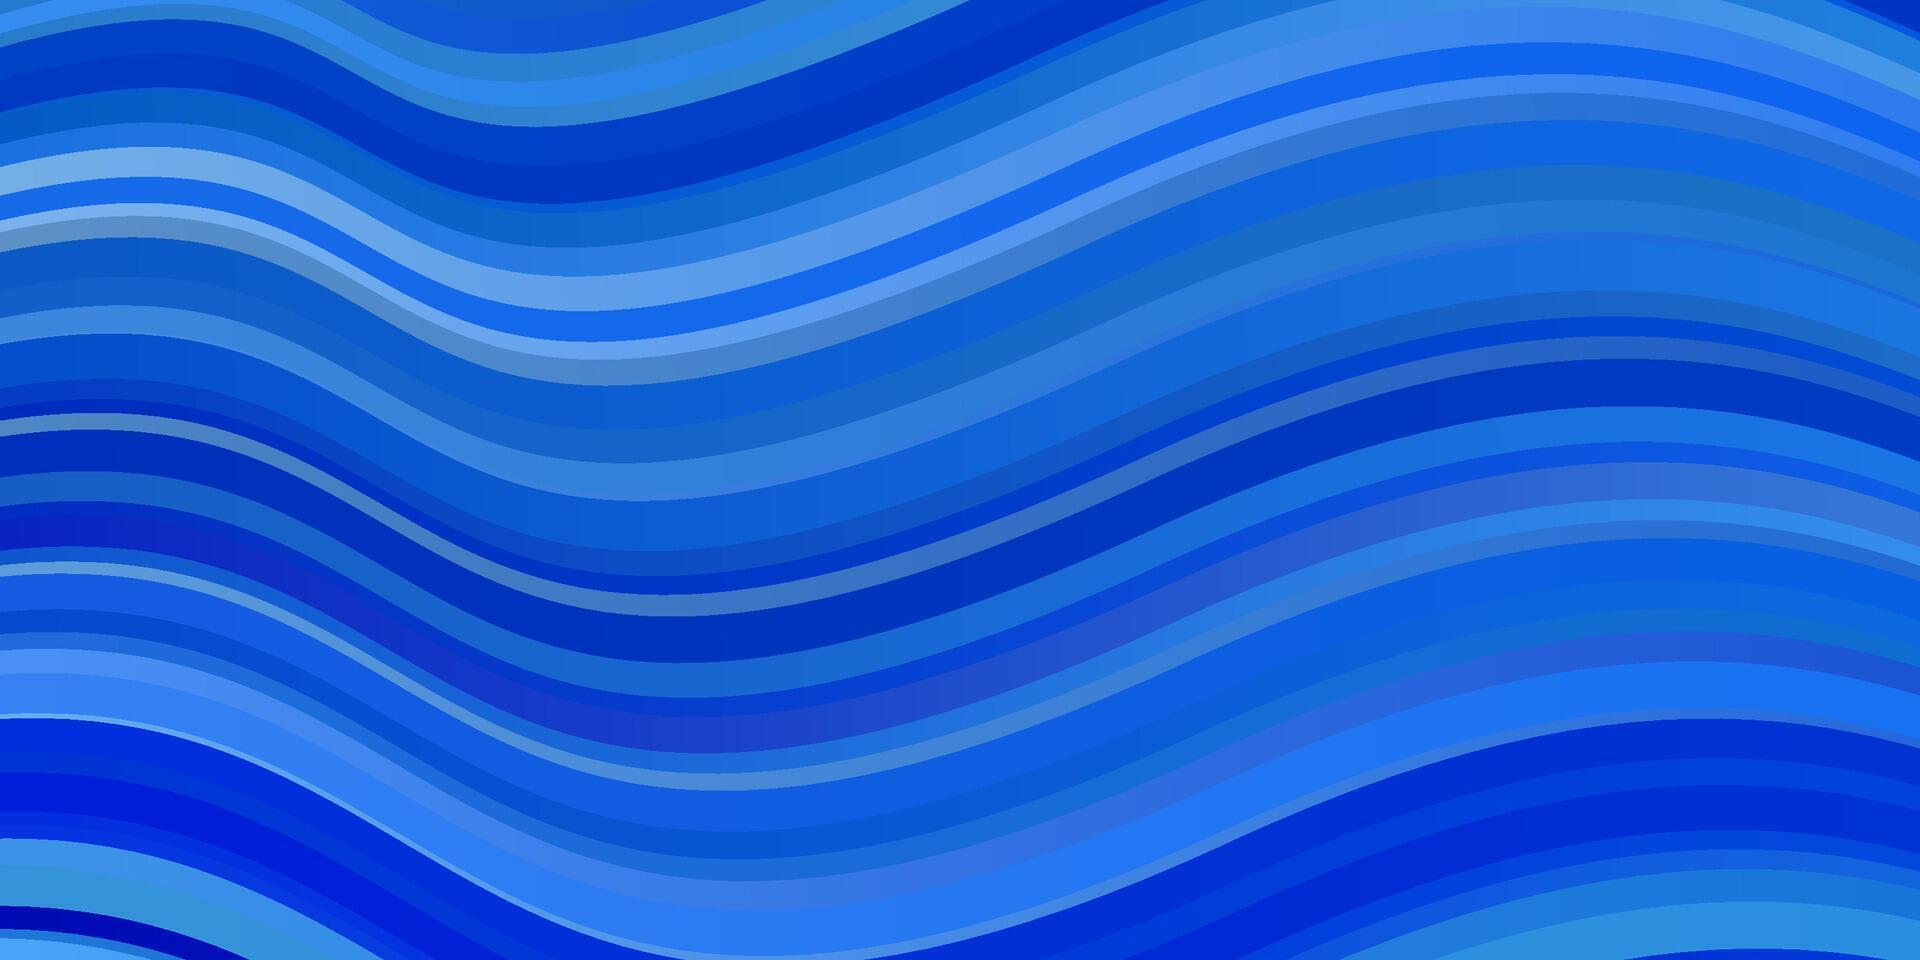 toile de fond de vecteur bleu clair avec des lignes pliées.